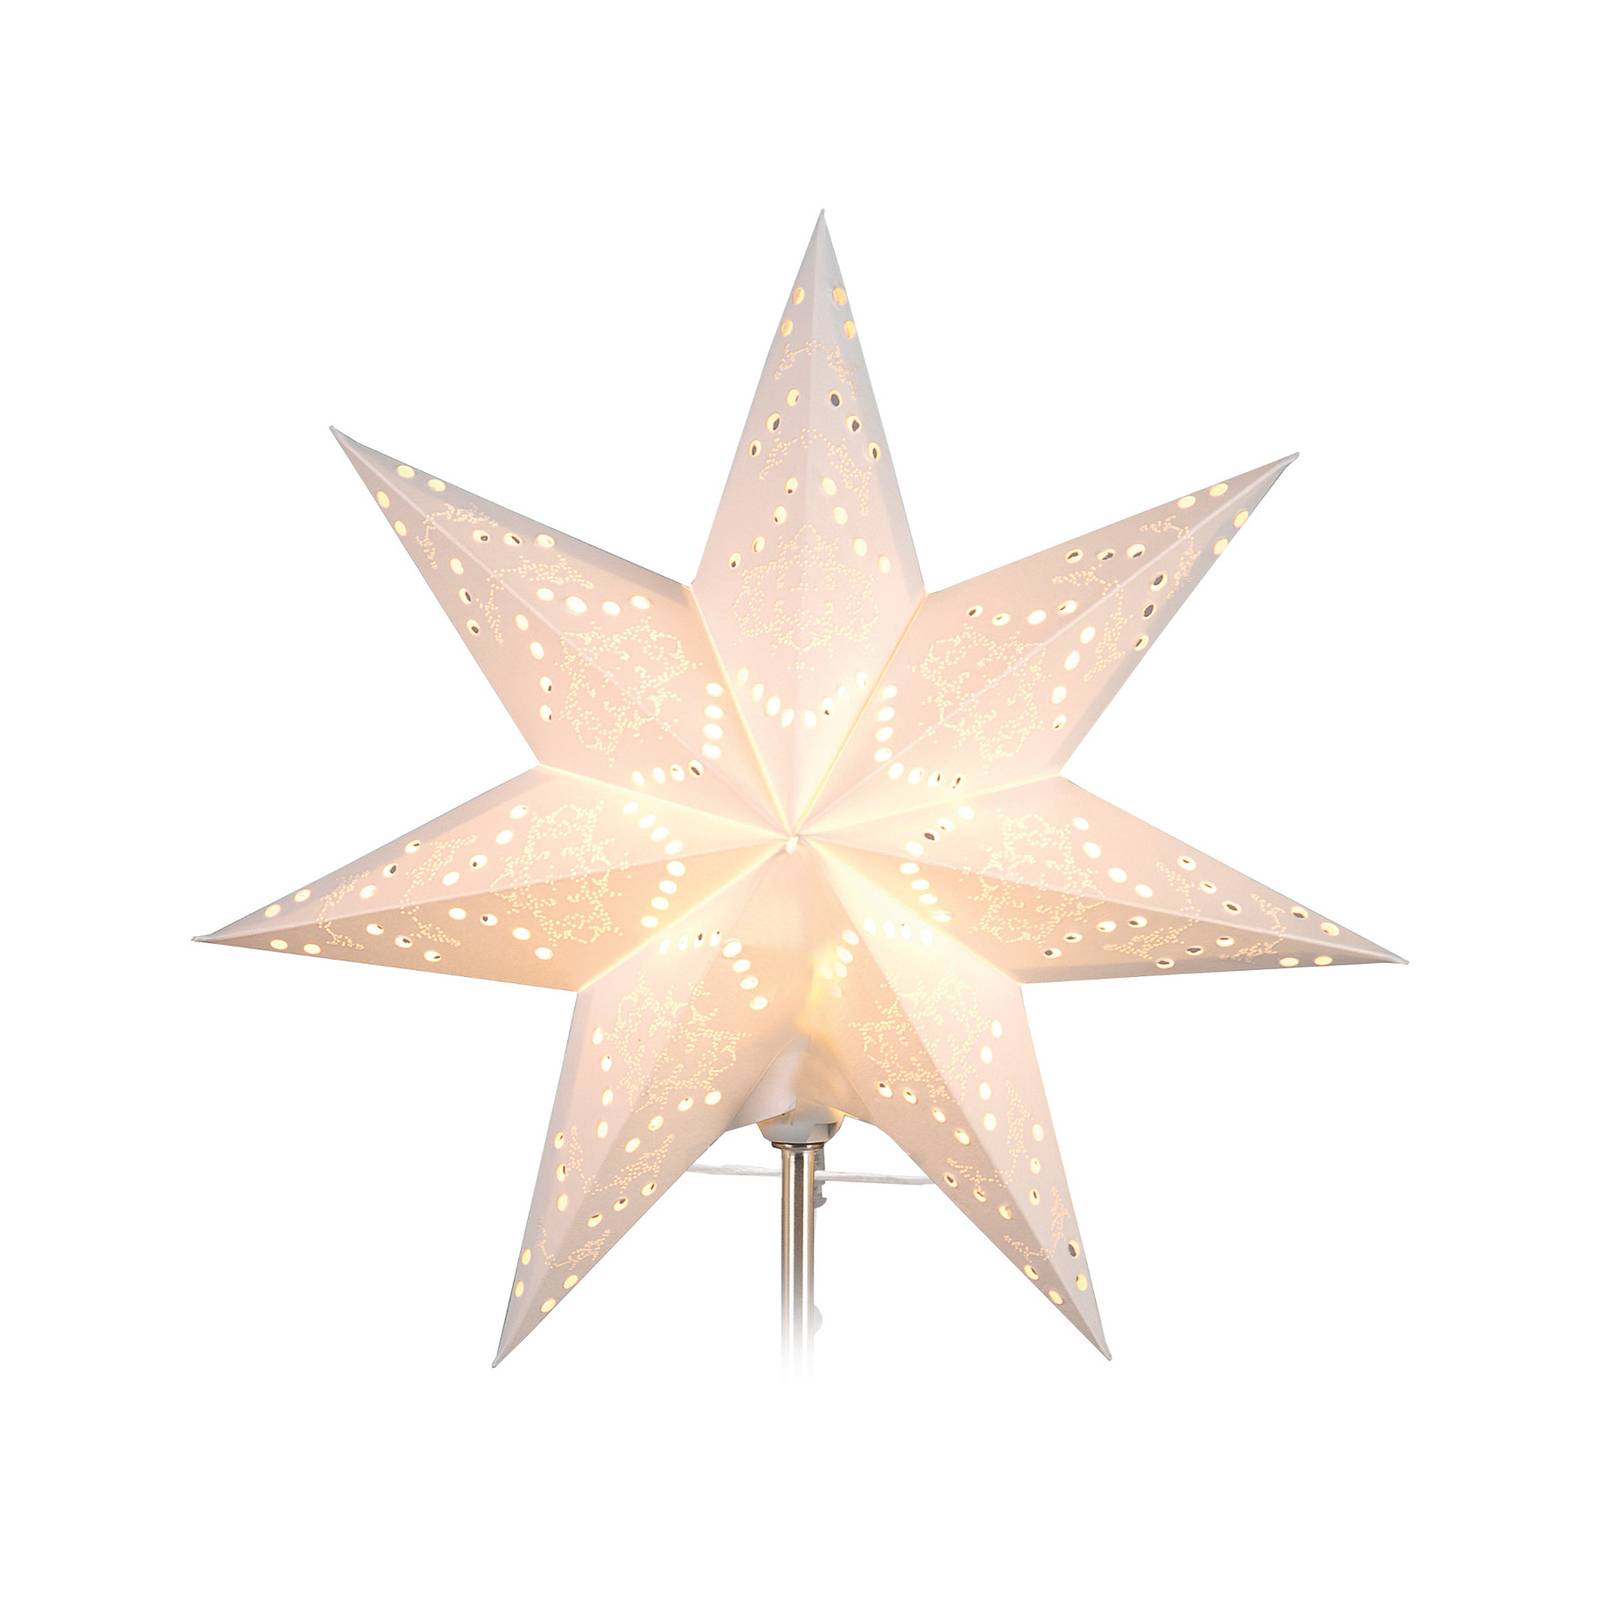 Paperi-varatähti Sensy Star valkoinen Ø34 cm